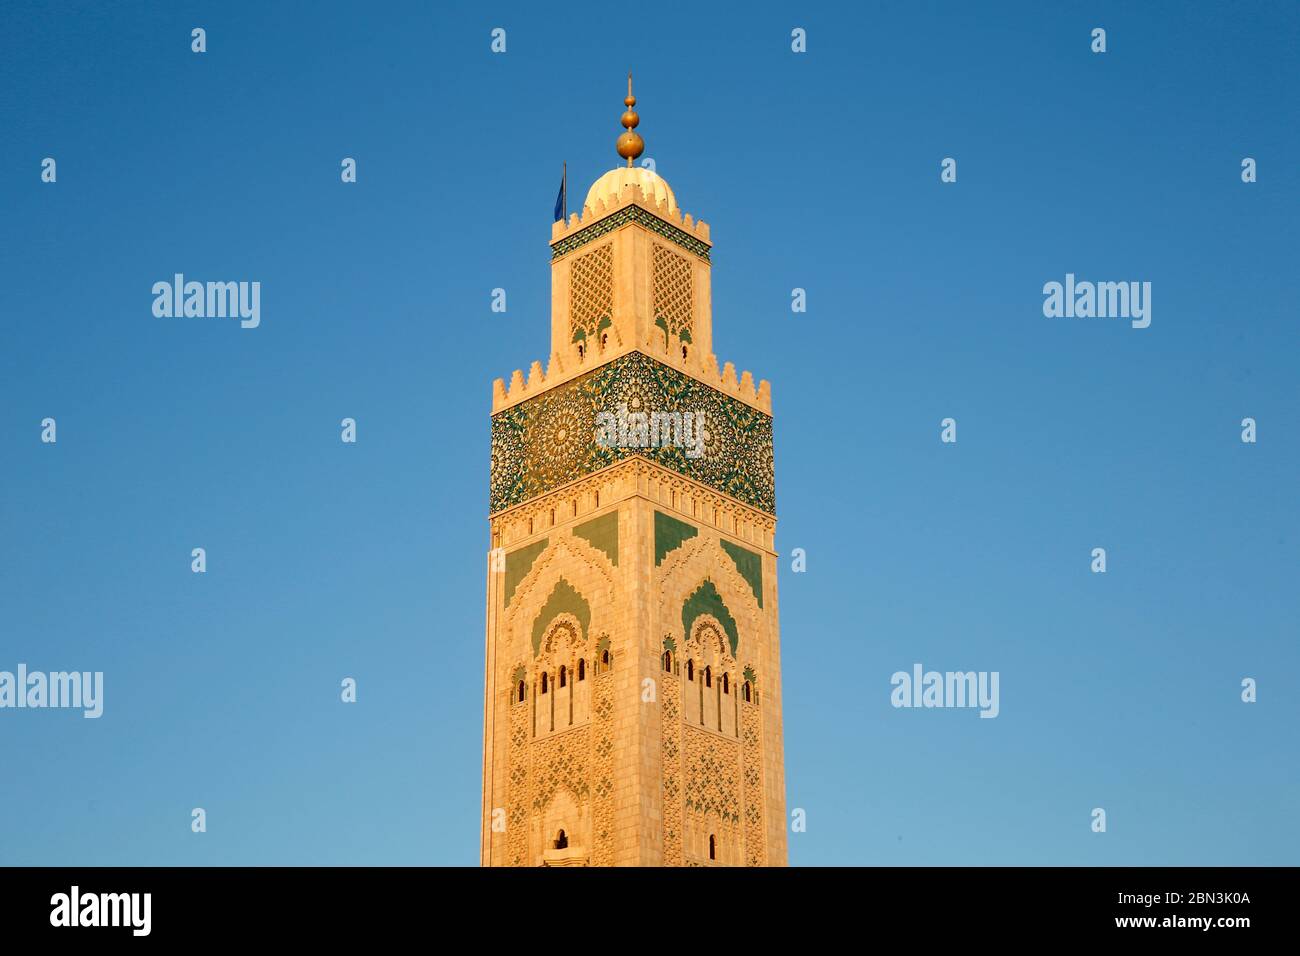 Minaret de la mosquée Hassan II, Casablanca, Maroc. Banque D'Images